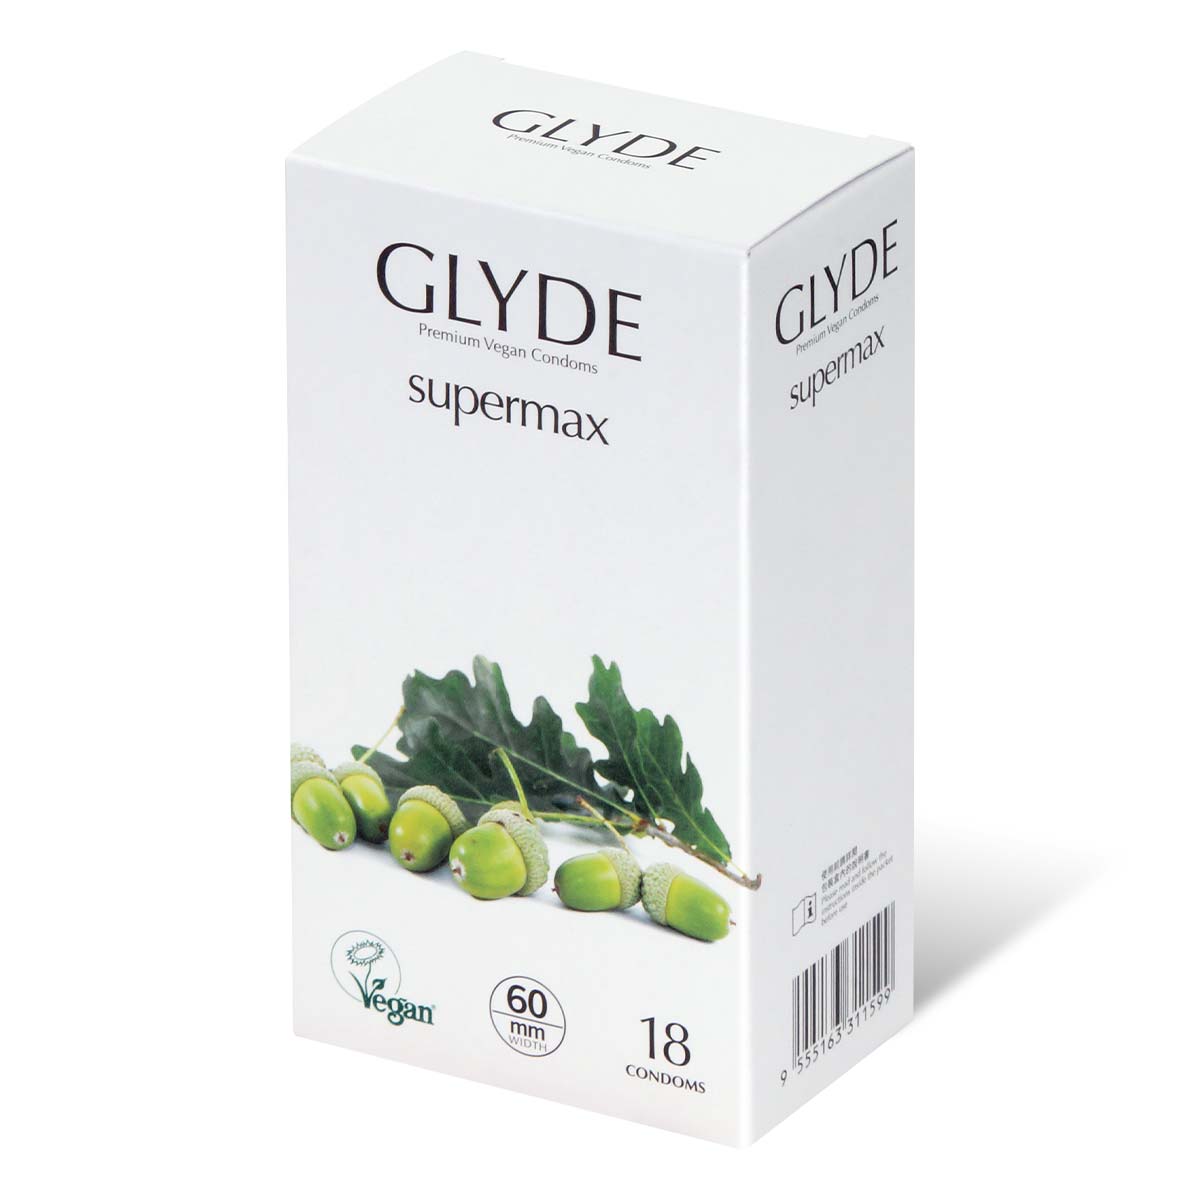 Glyde 格蕾迪 素食主义安全套 加大码 60mm 18 片装 乳胶安全套-p_1